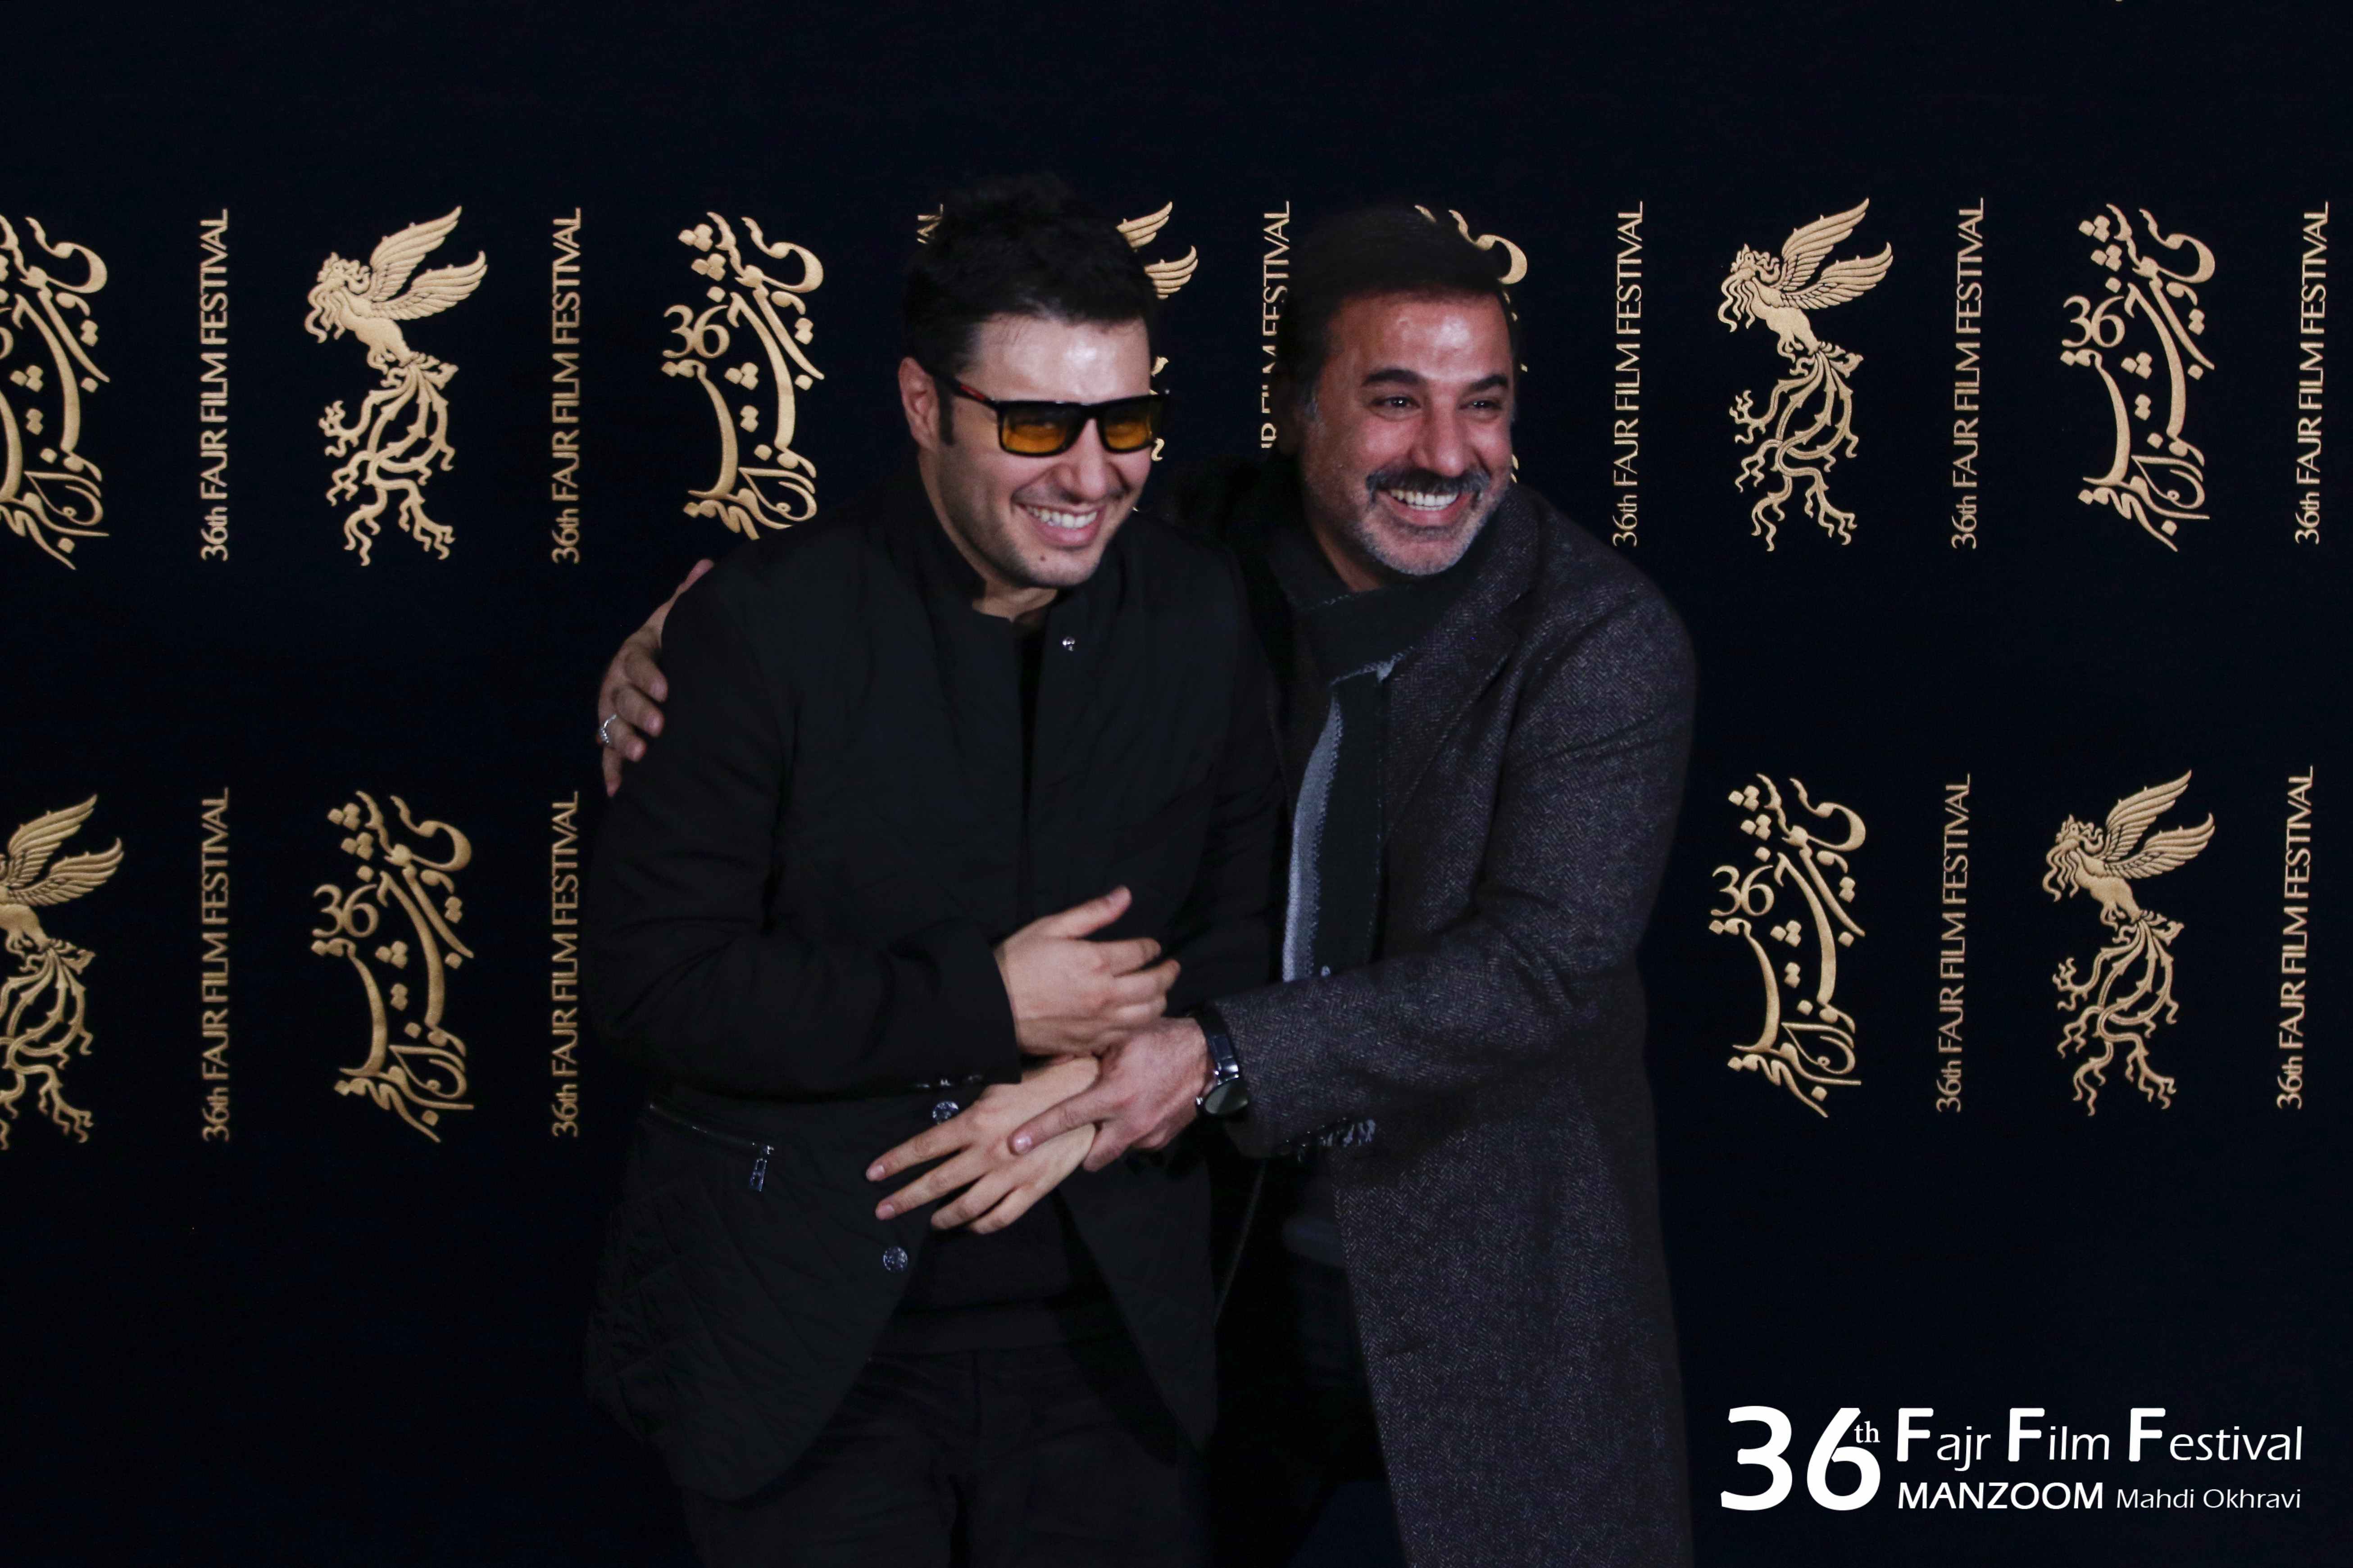 جواد عزتی در جشنواره فیلم سینمایی تنگه ابوقریب به همراه علی سلیمانی